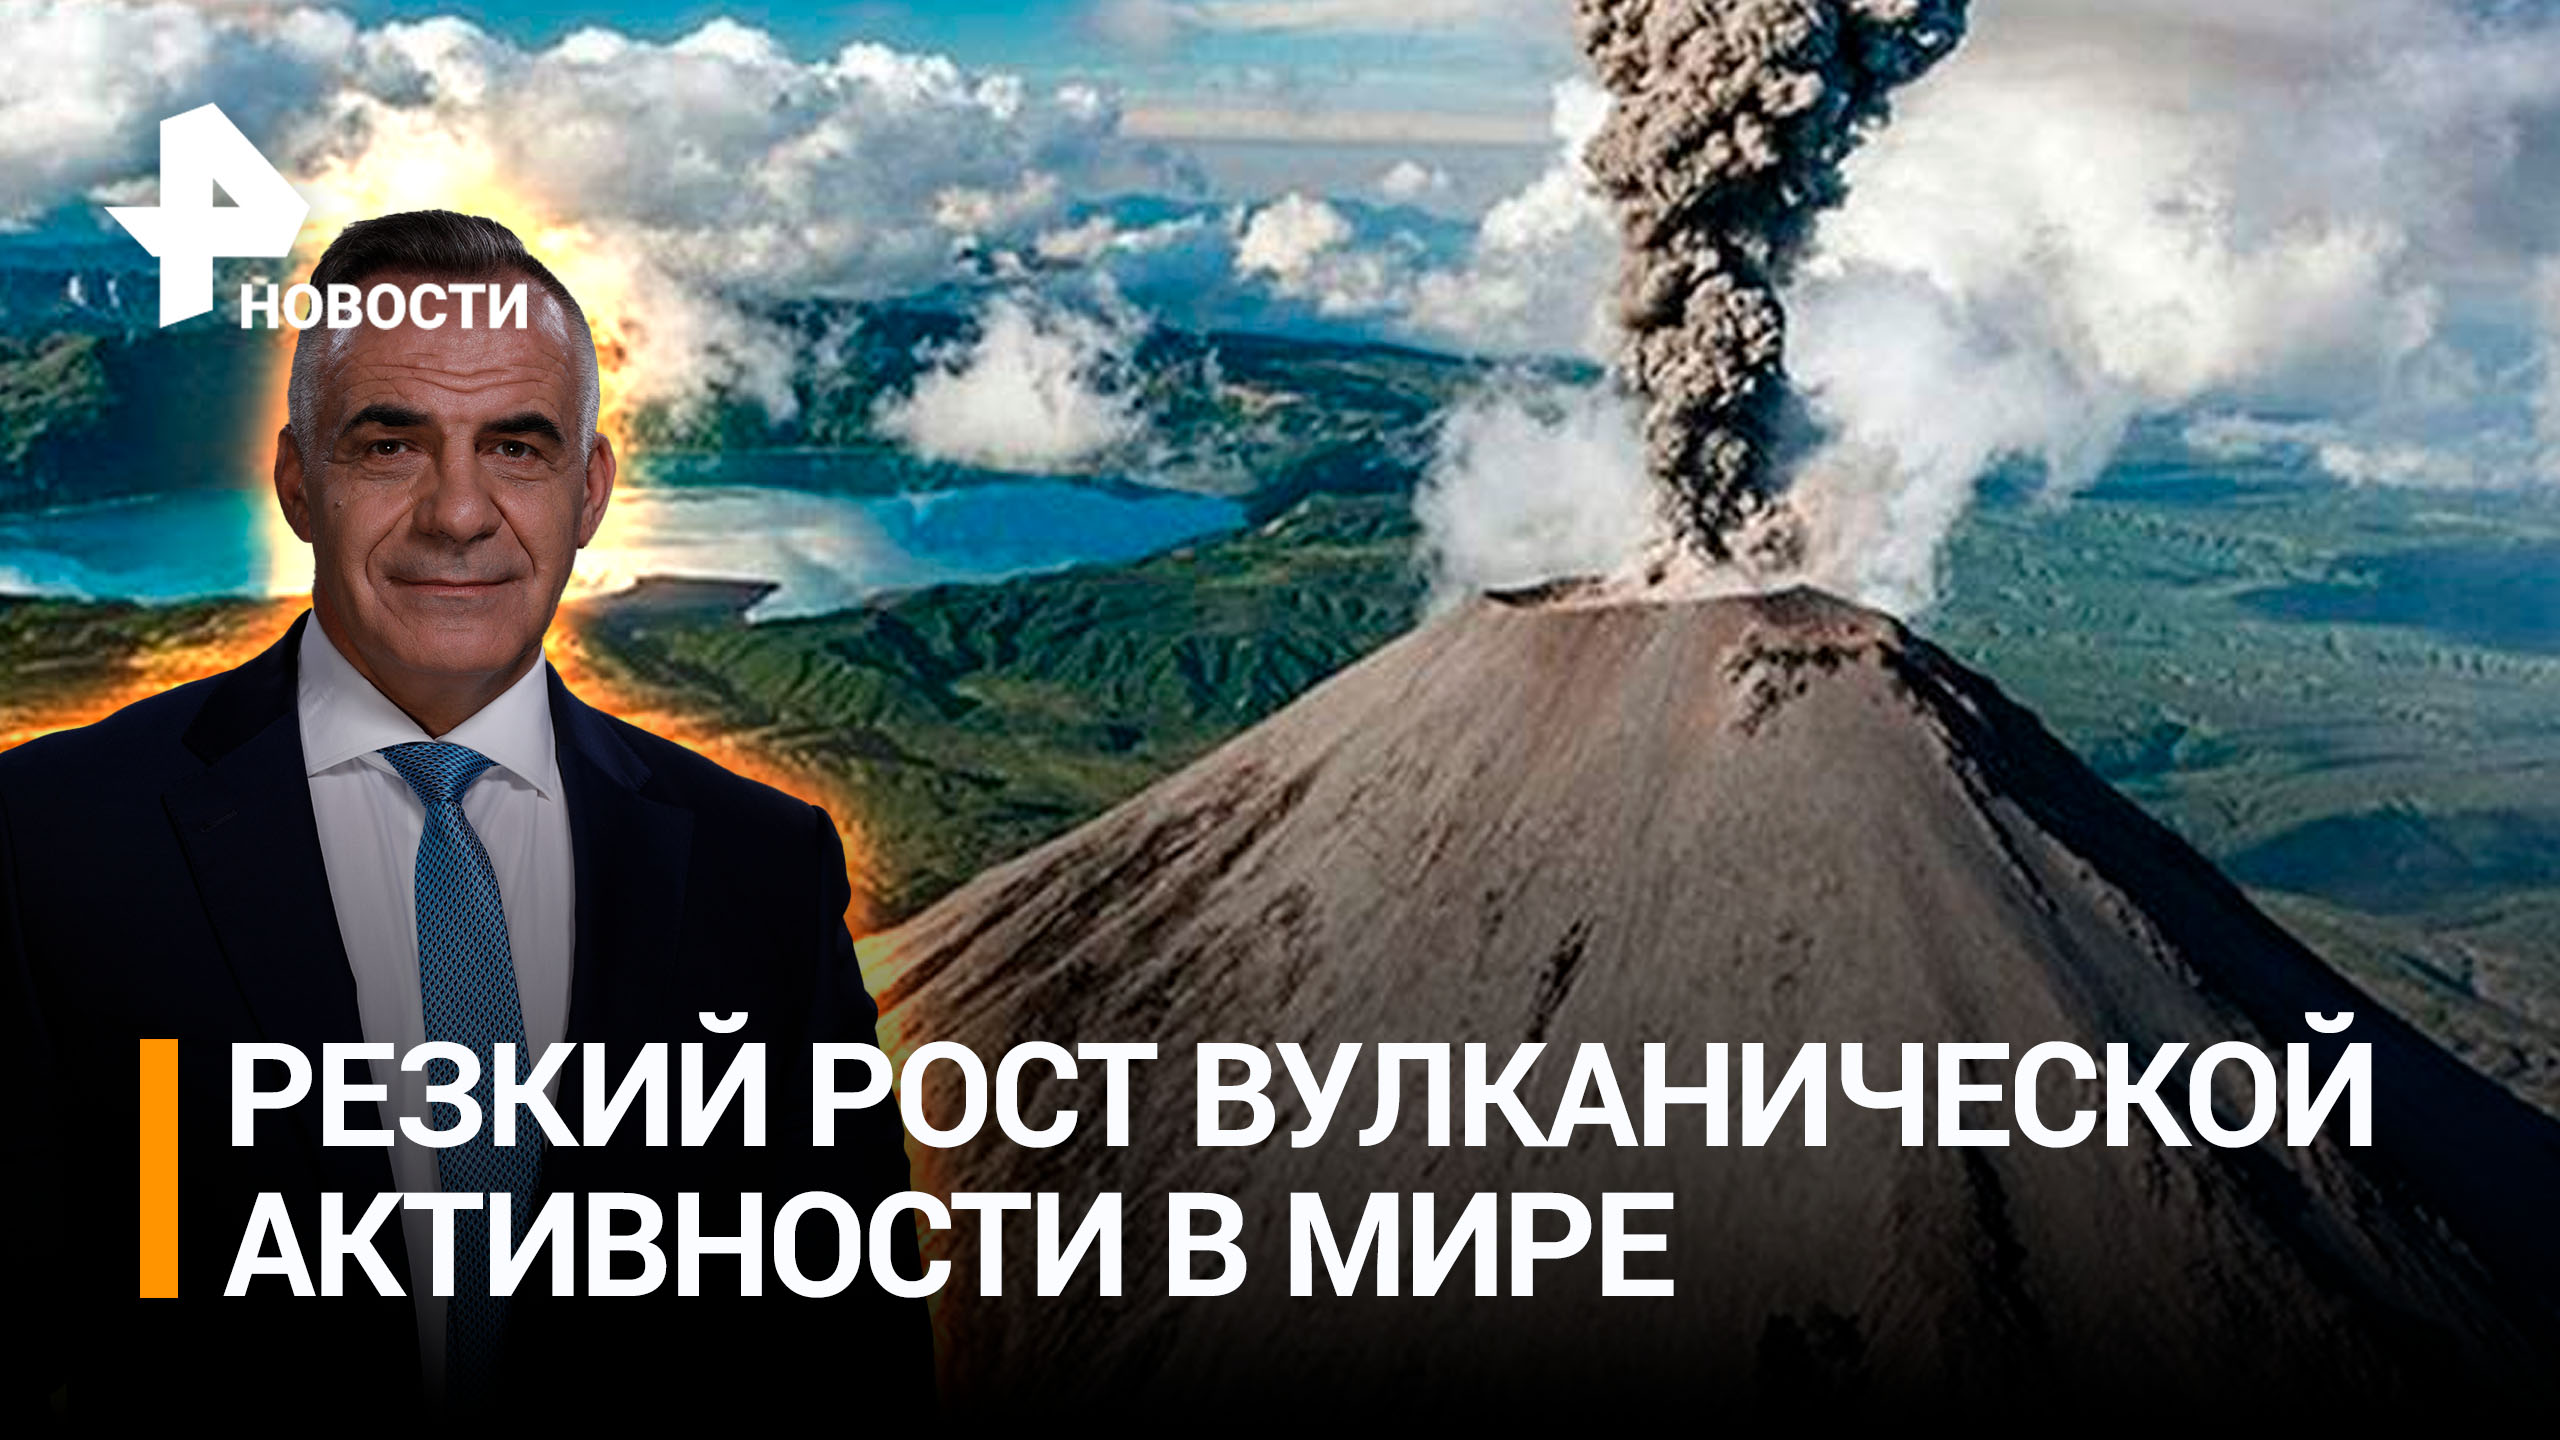 Пепельный оттенок: вулканическая активность резко возросла на Земле / ИТОГИ с Петром Марченко